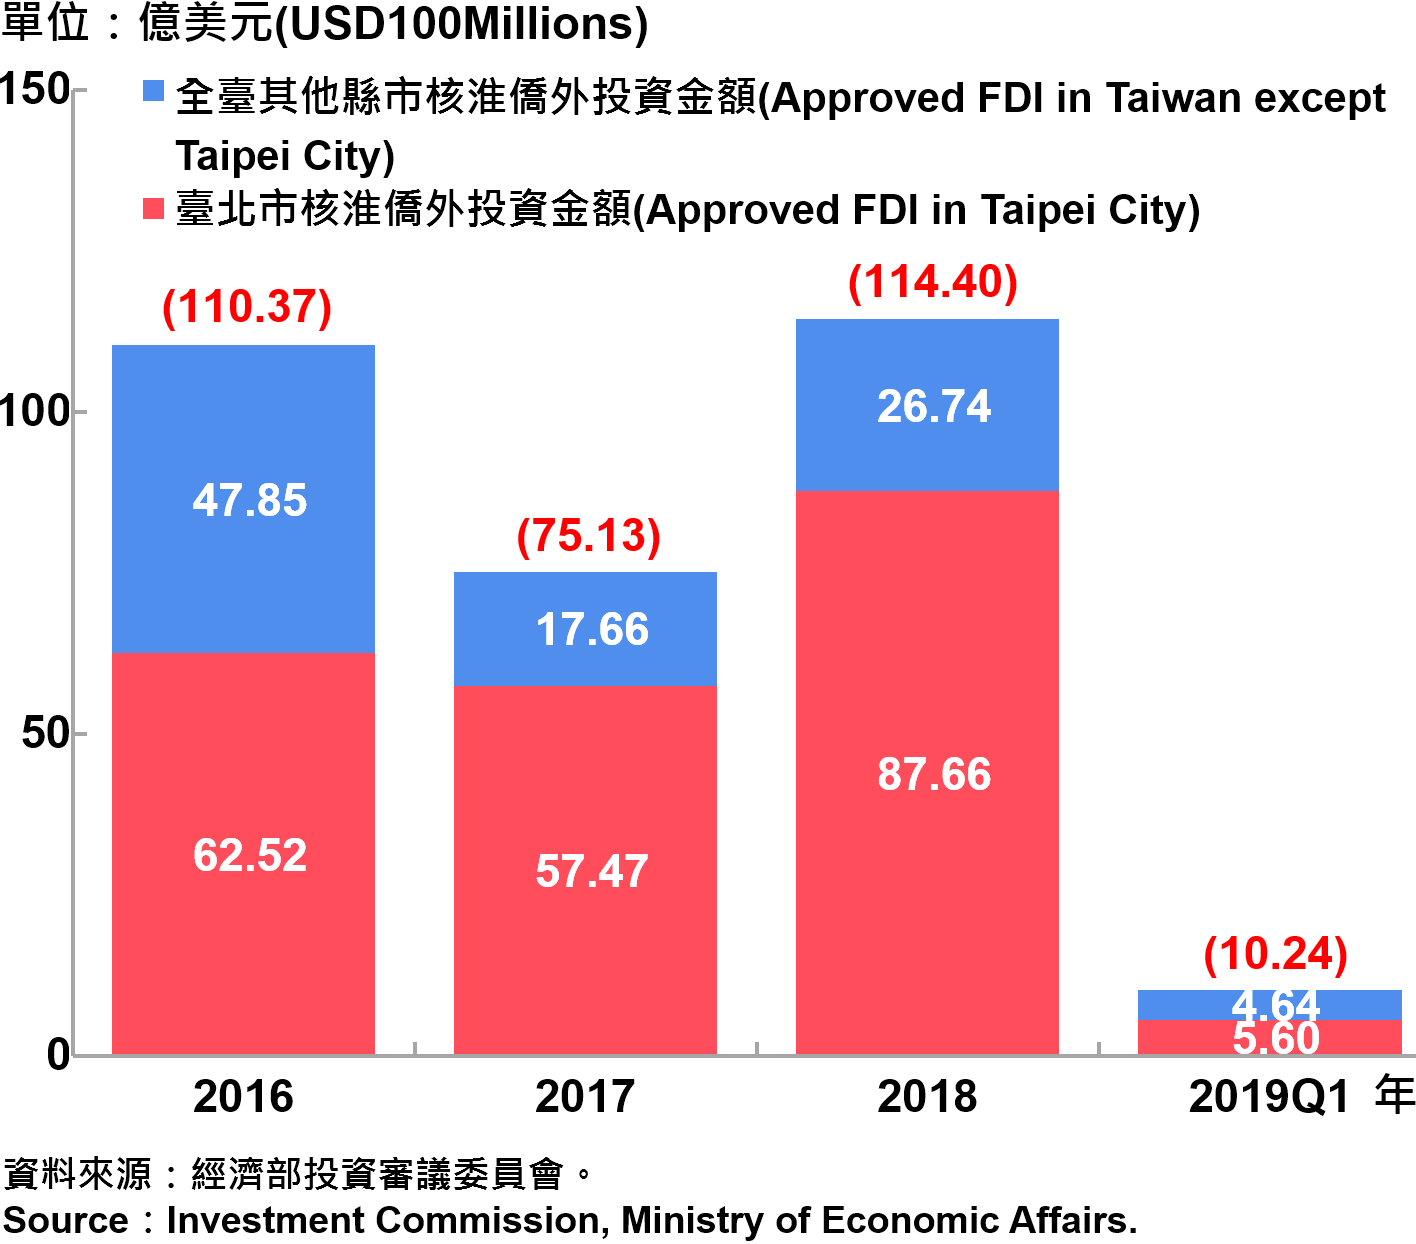 臺北市與全國僑外投資金額—2019Q1 Foreign Direct Investment（FDI）in Taipei City and Taiwan—2019Q1